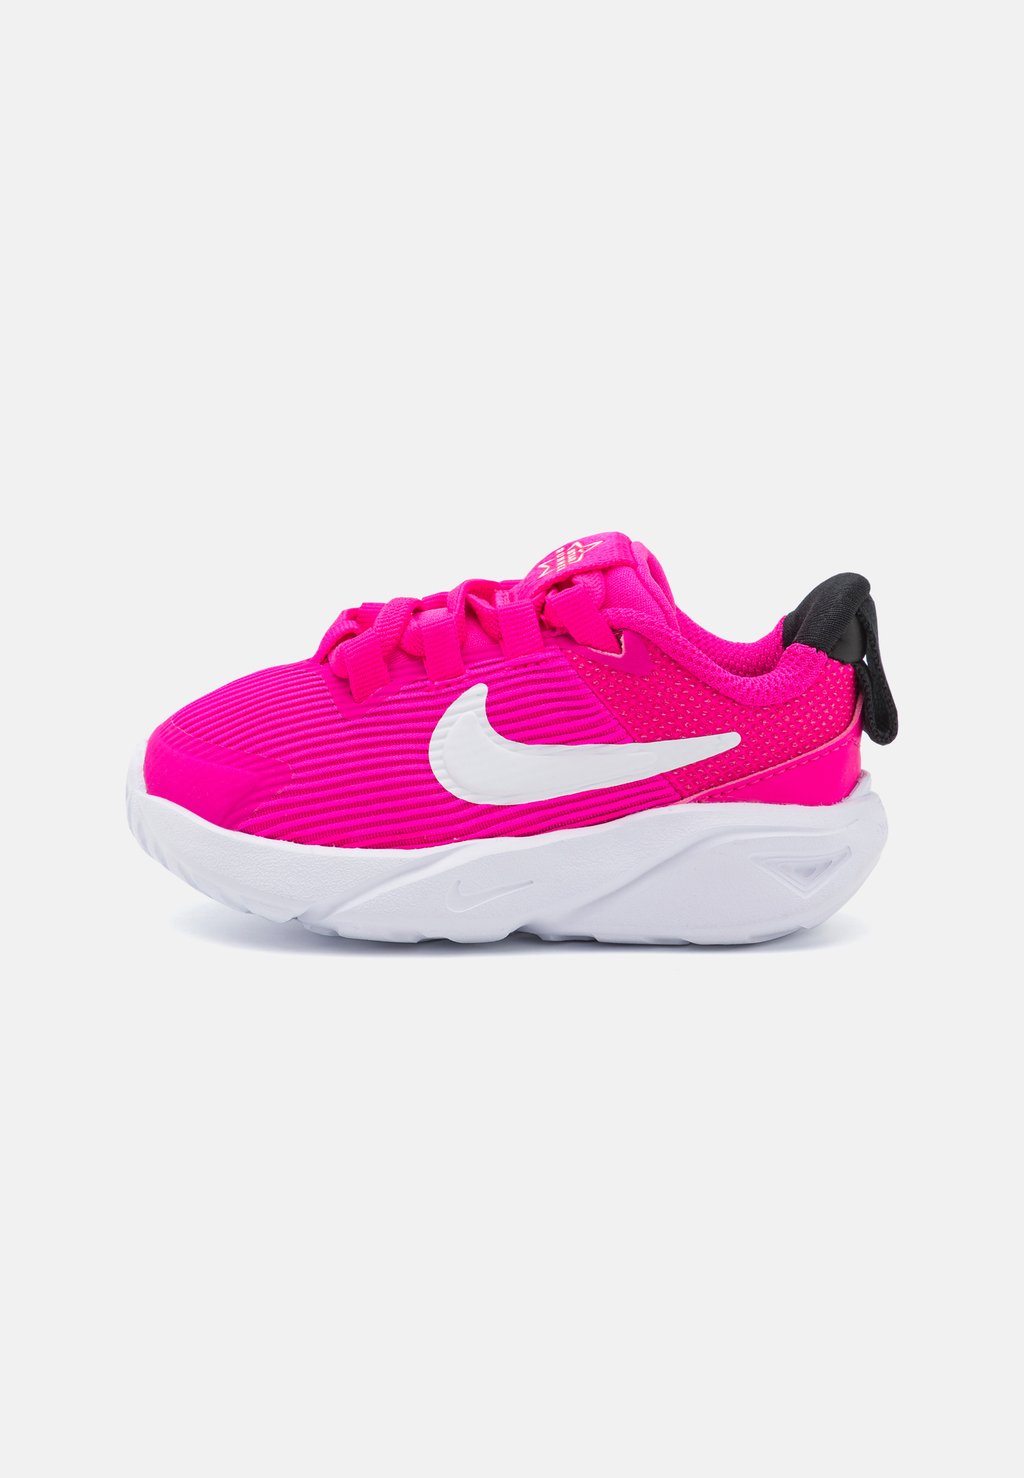 Нейтральные кроссовки Star Runner 4 Unisex Nike, цвет fierce pink/white/black/playful pink gravity black pink